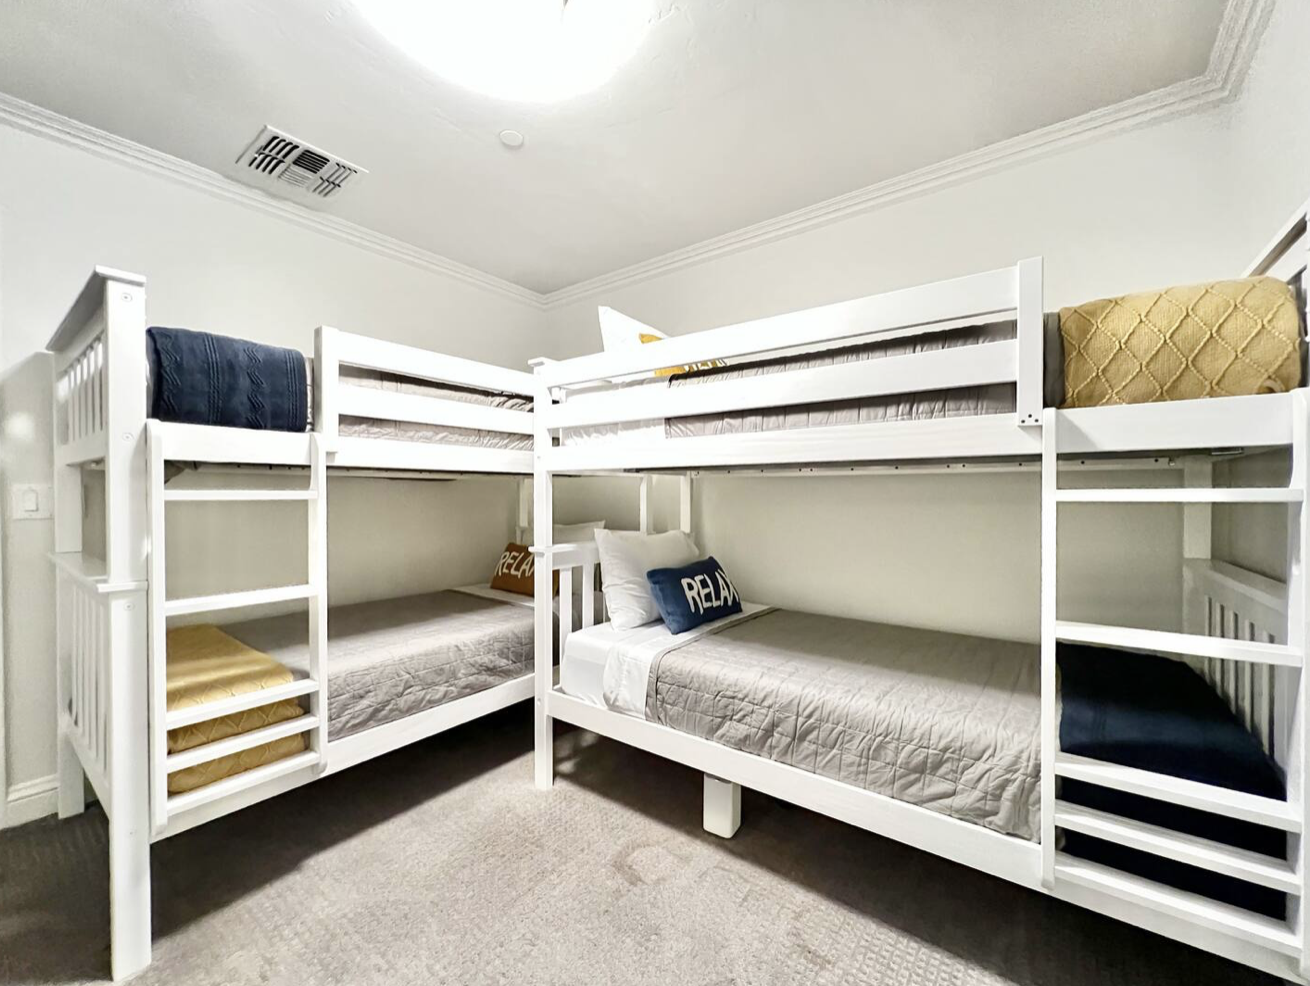 Bedroom 5: Two Bunk Beds